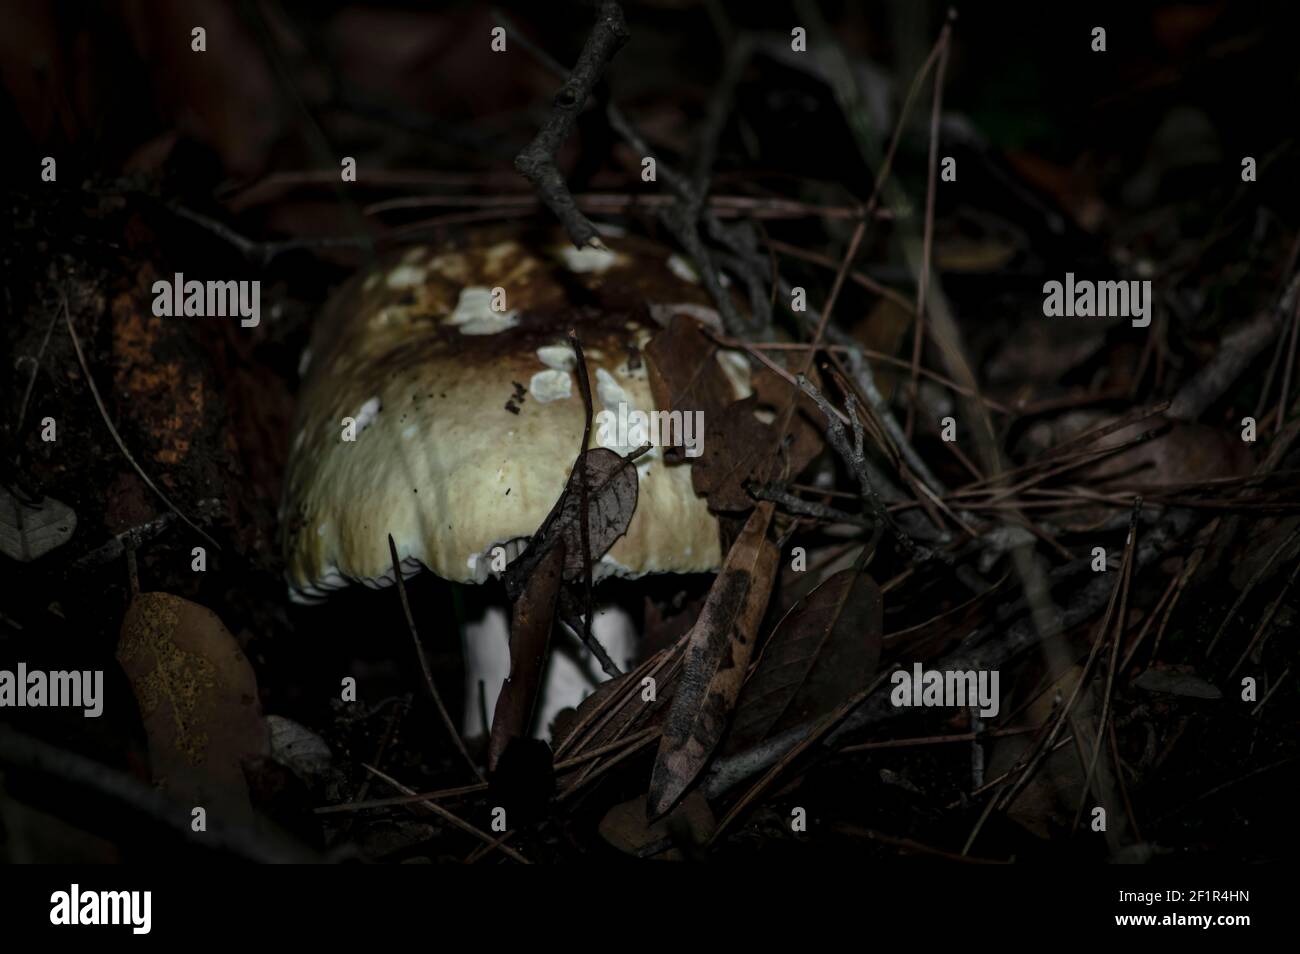 Makro-Nahaufnahme von Pilzen und Unterholz in der Natur Sardinien Stockfoto